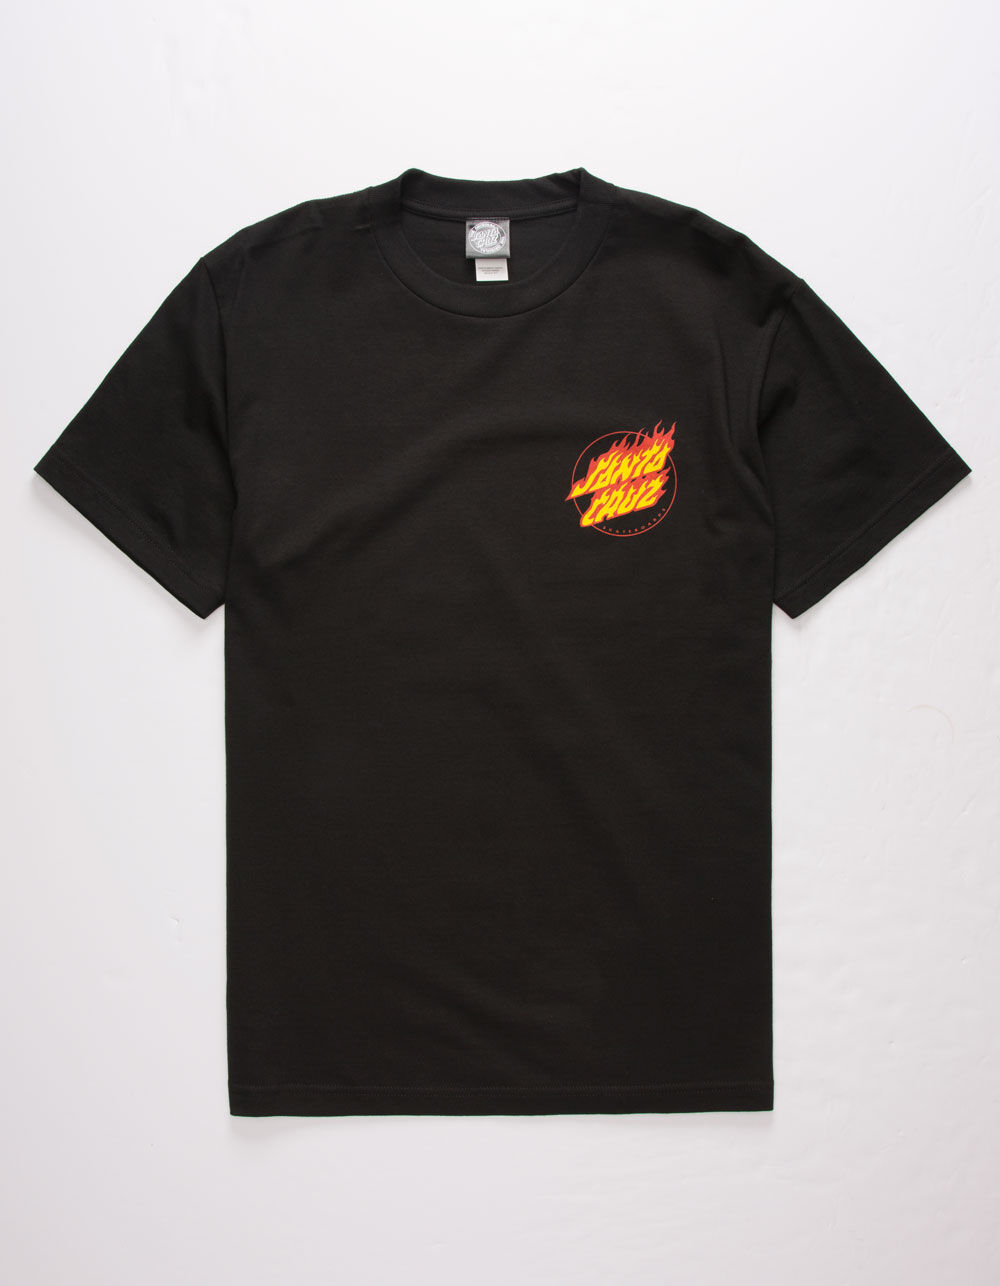 Fuego Shirt Fire Shirt Flames Tee Hot Fireball Lit Meme 